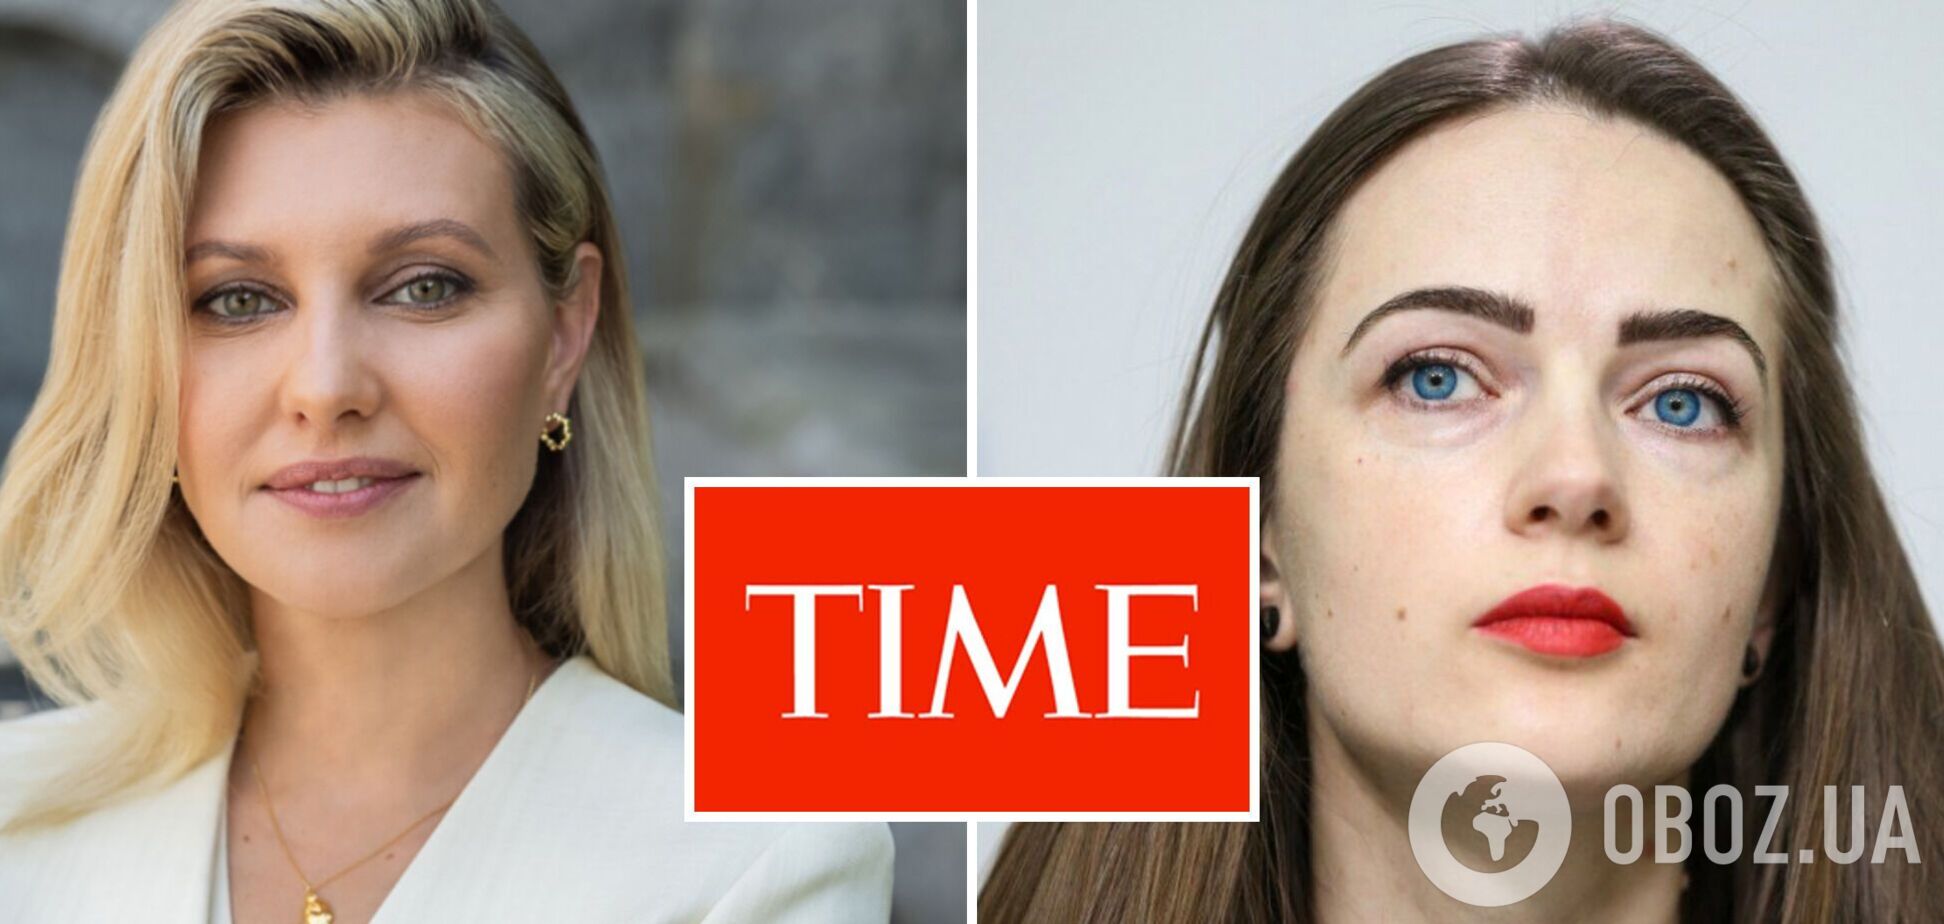 Елена Зеленская и нобелевская лауреатка Александра Матвийчук вошли в 100 самых влиятельных людей по версии журнала Time